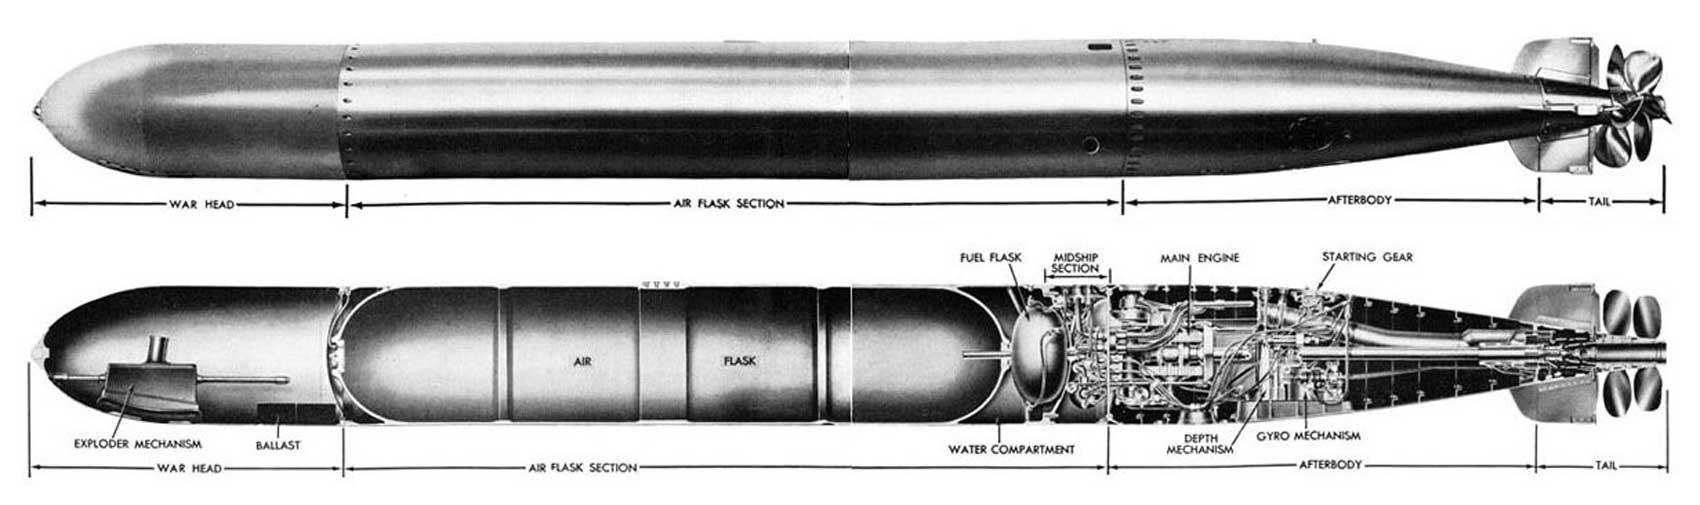 Торпеда времени. Торпеда калибра 533 мм. 533 Мм торпеда MK II. MK 14 Torpedo.